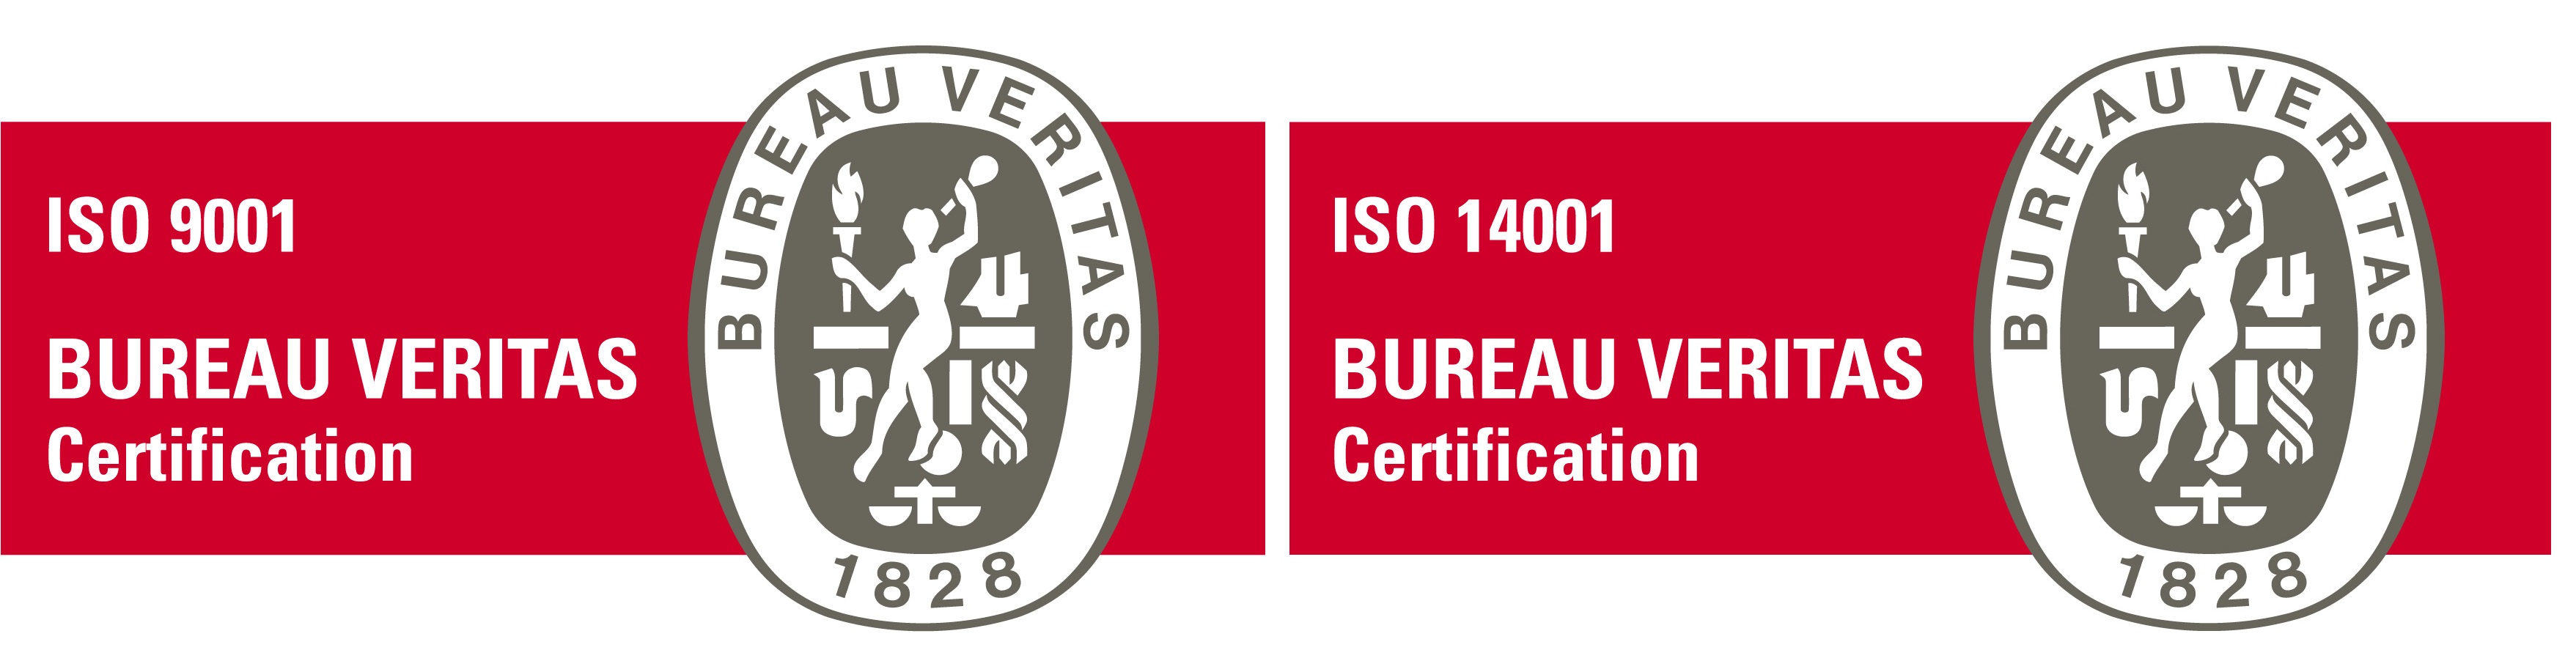 BV_Certification_ISO900114001